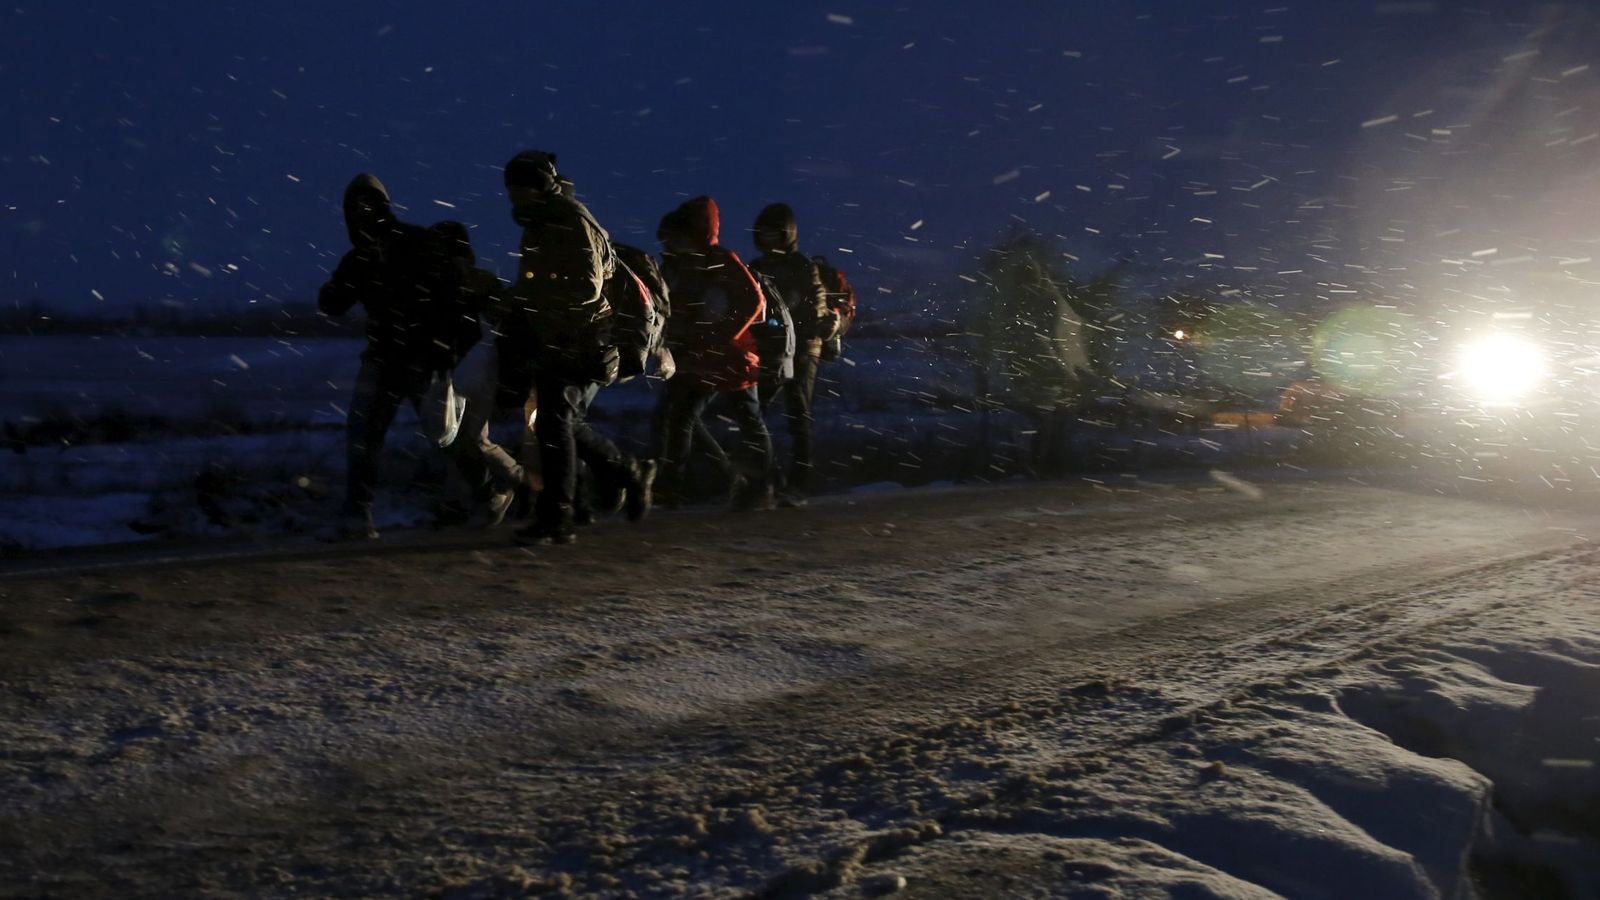 Foto: Migrantes caminan por una carretera tras cruzar la frontera de Macedonia, en Miratovac, Serbia, el 17 de enero de 2016 (Reuters).  